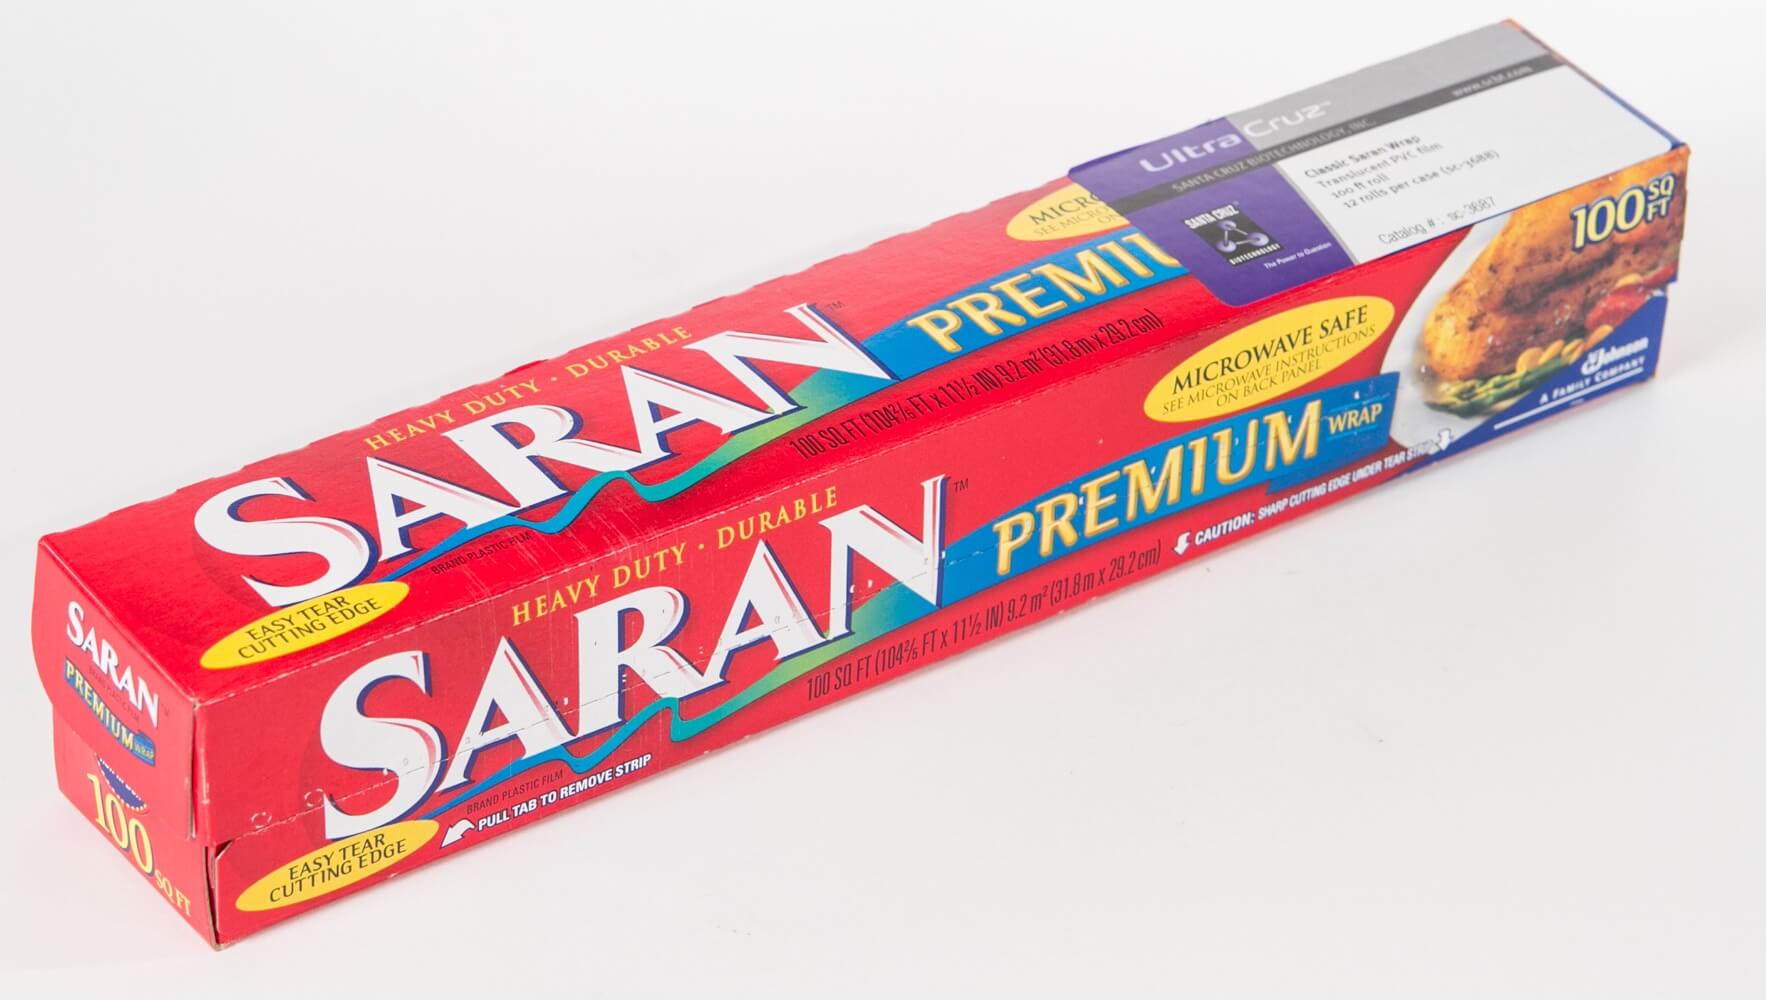 Saran Wrap Classic Premium Plastic Wrap, 100sq ft